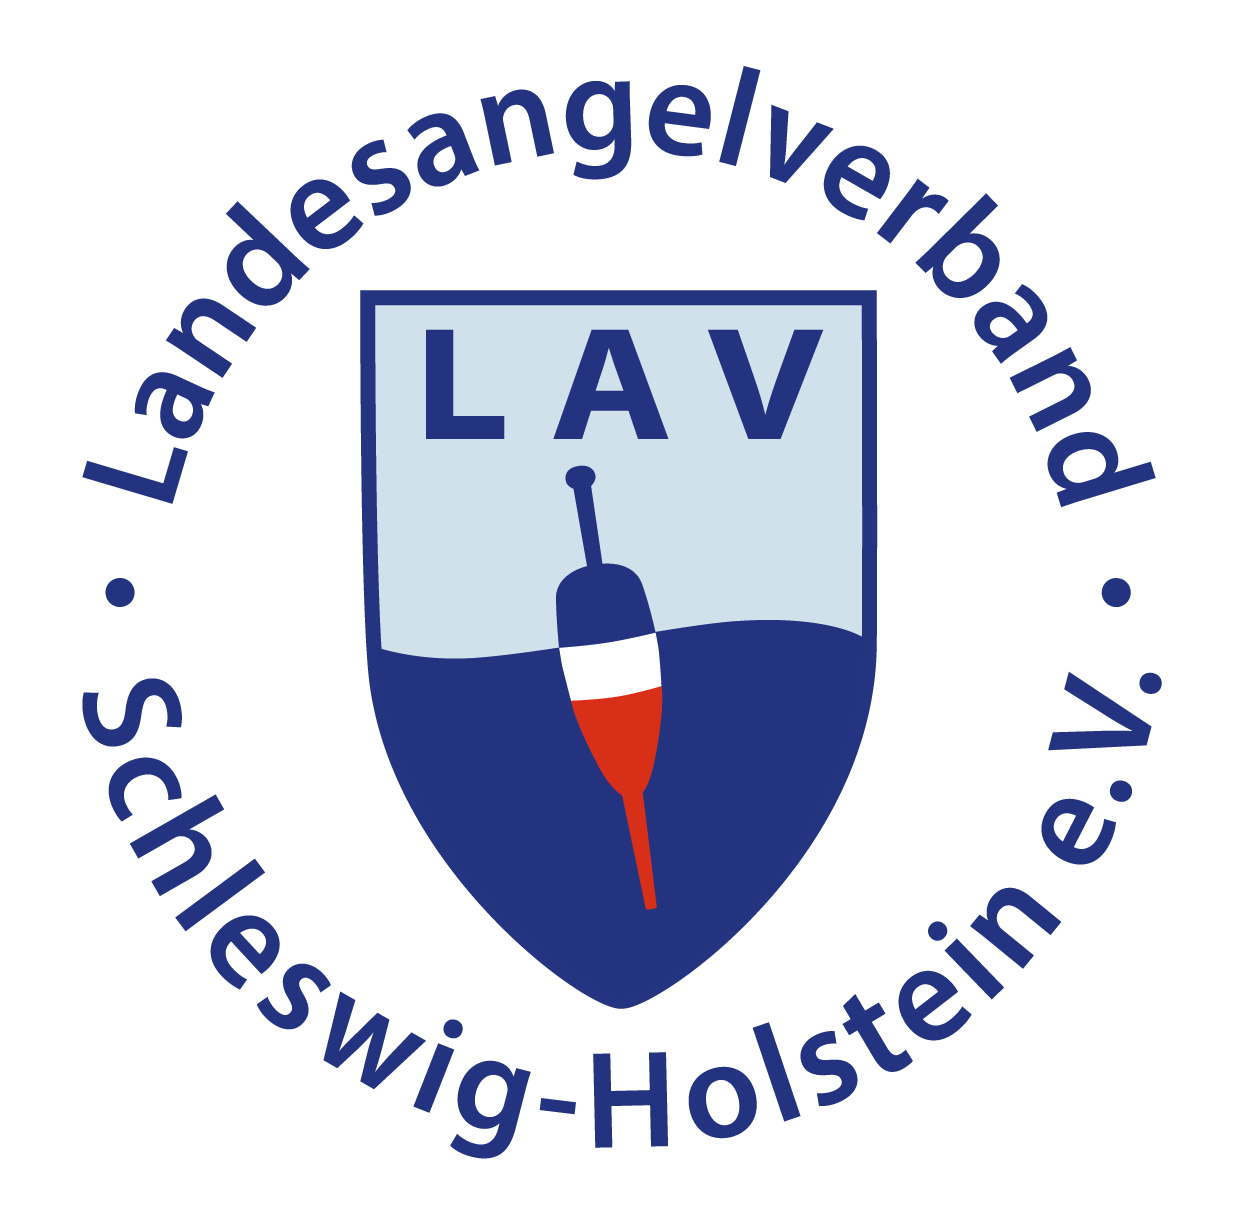 Landesangelverband Schleswig-Holstein e.V.